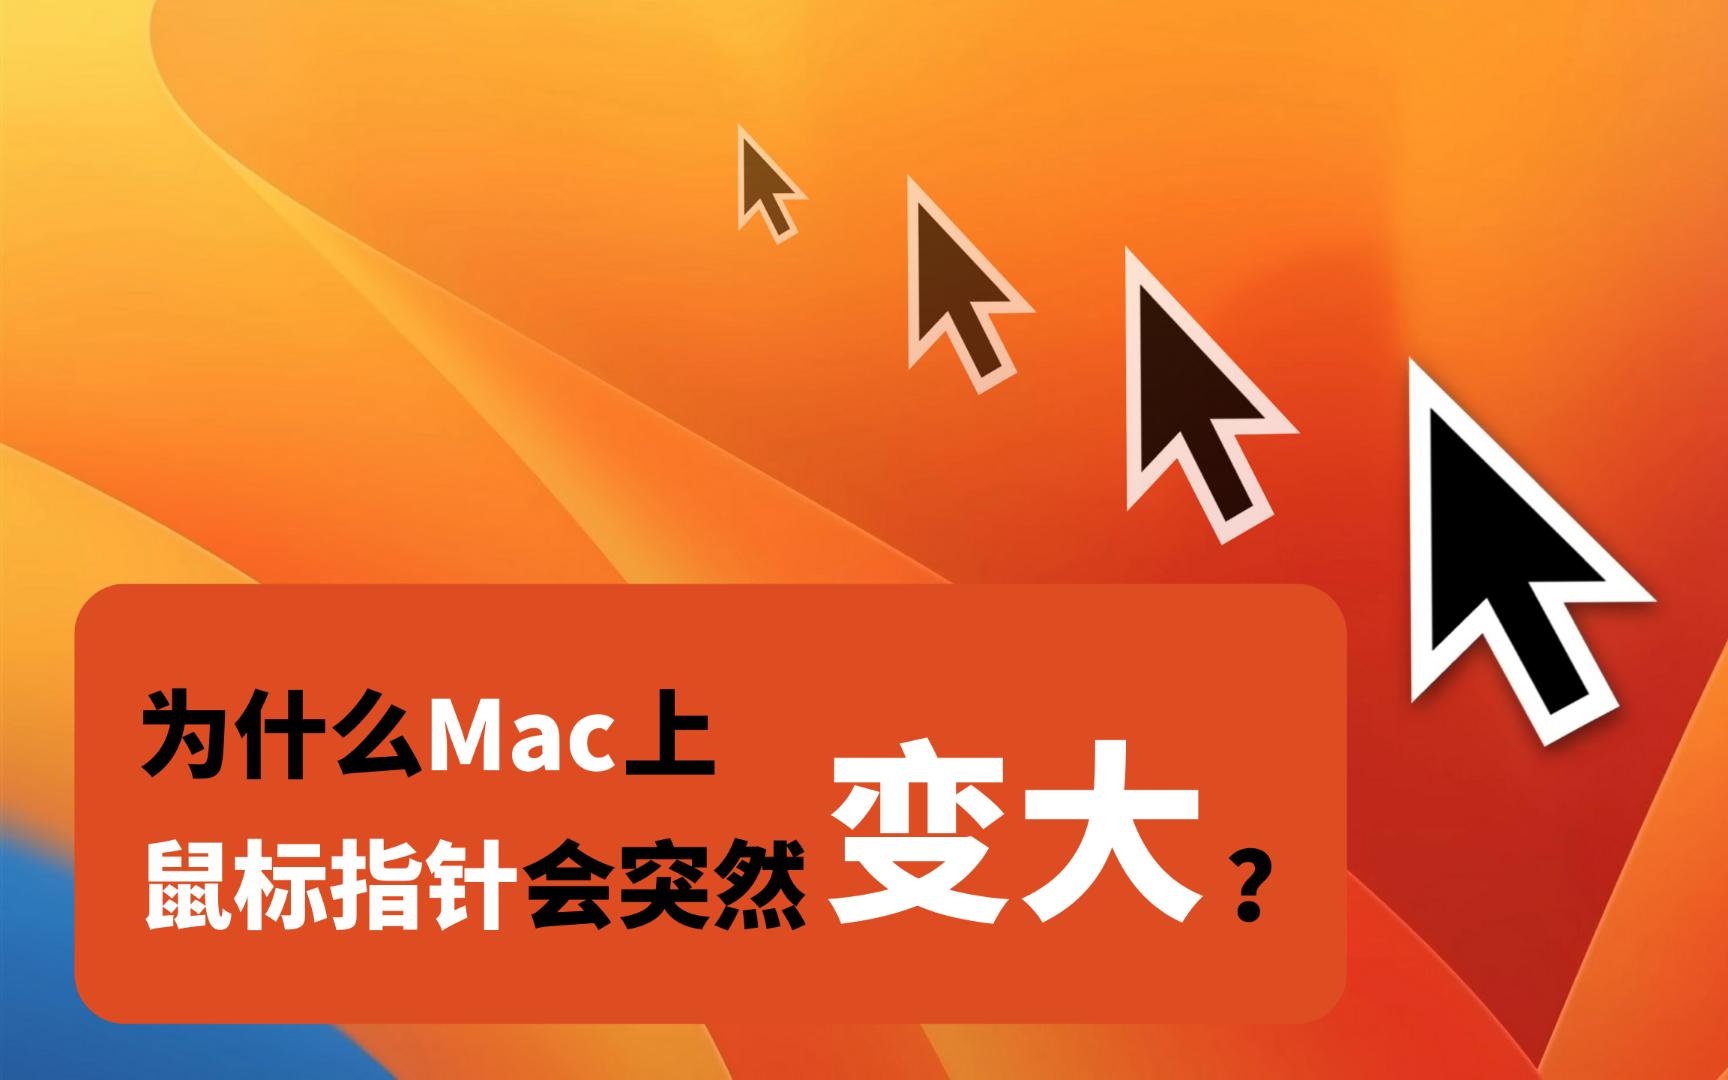 为什么mac上鼠标指针会突然变大?